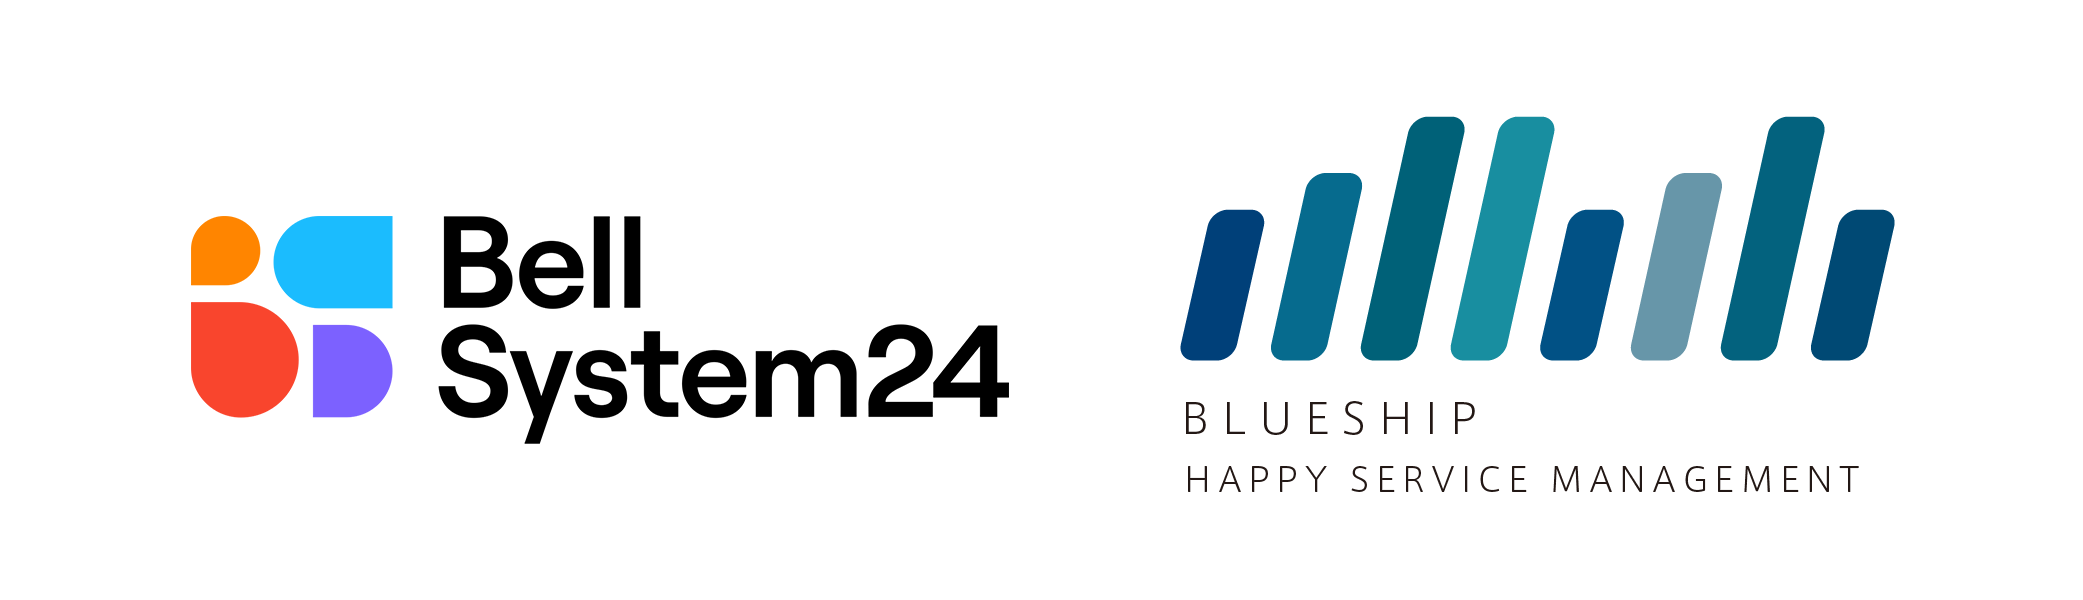 ベルシステム24/Blueship ロゴ